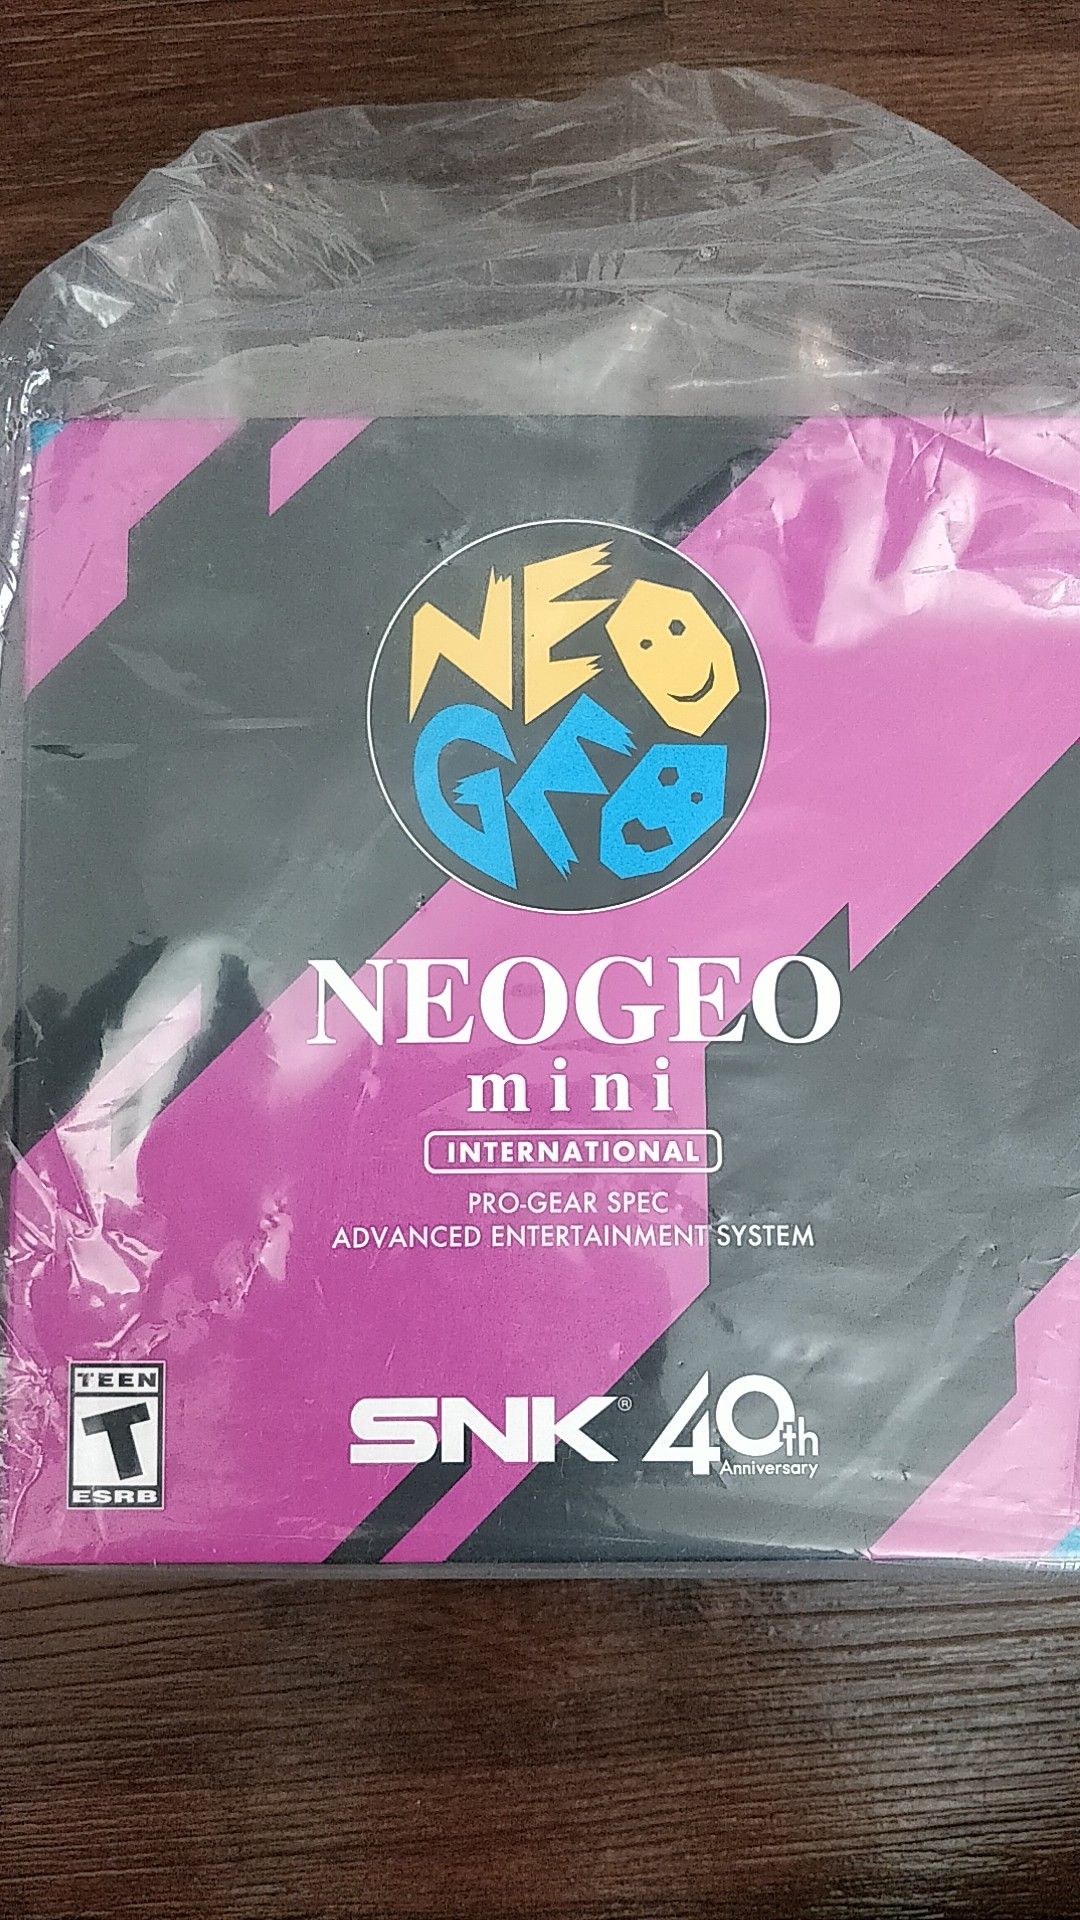 NeoGeo Mini with 40 games preloaded